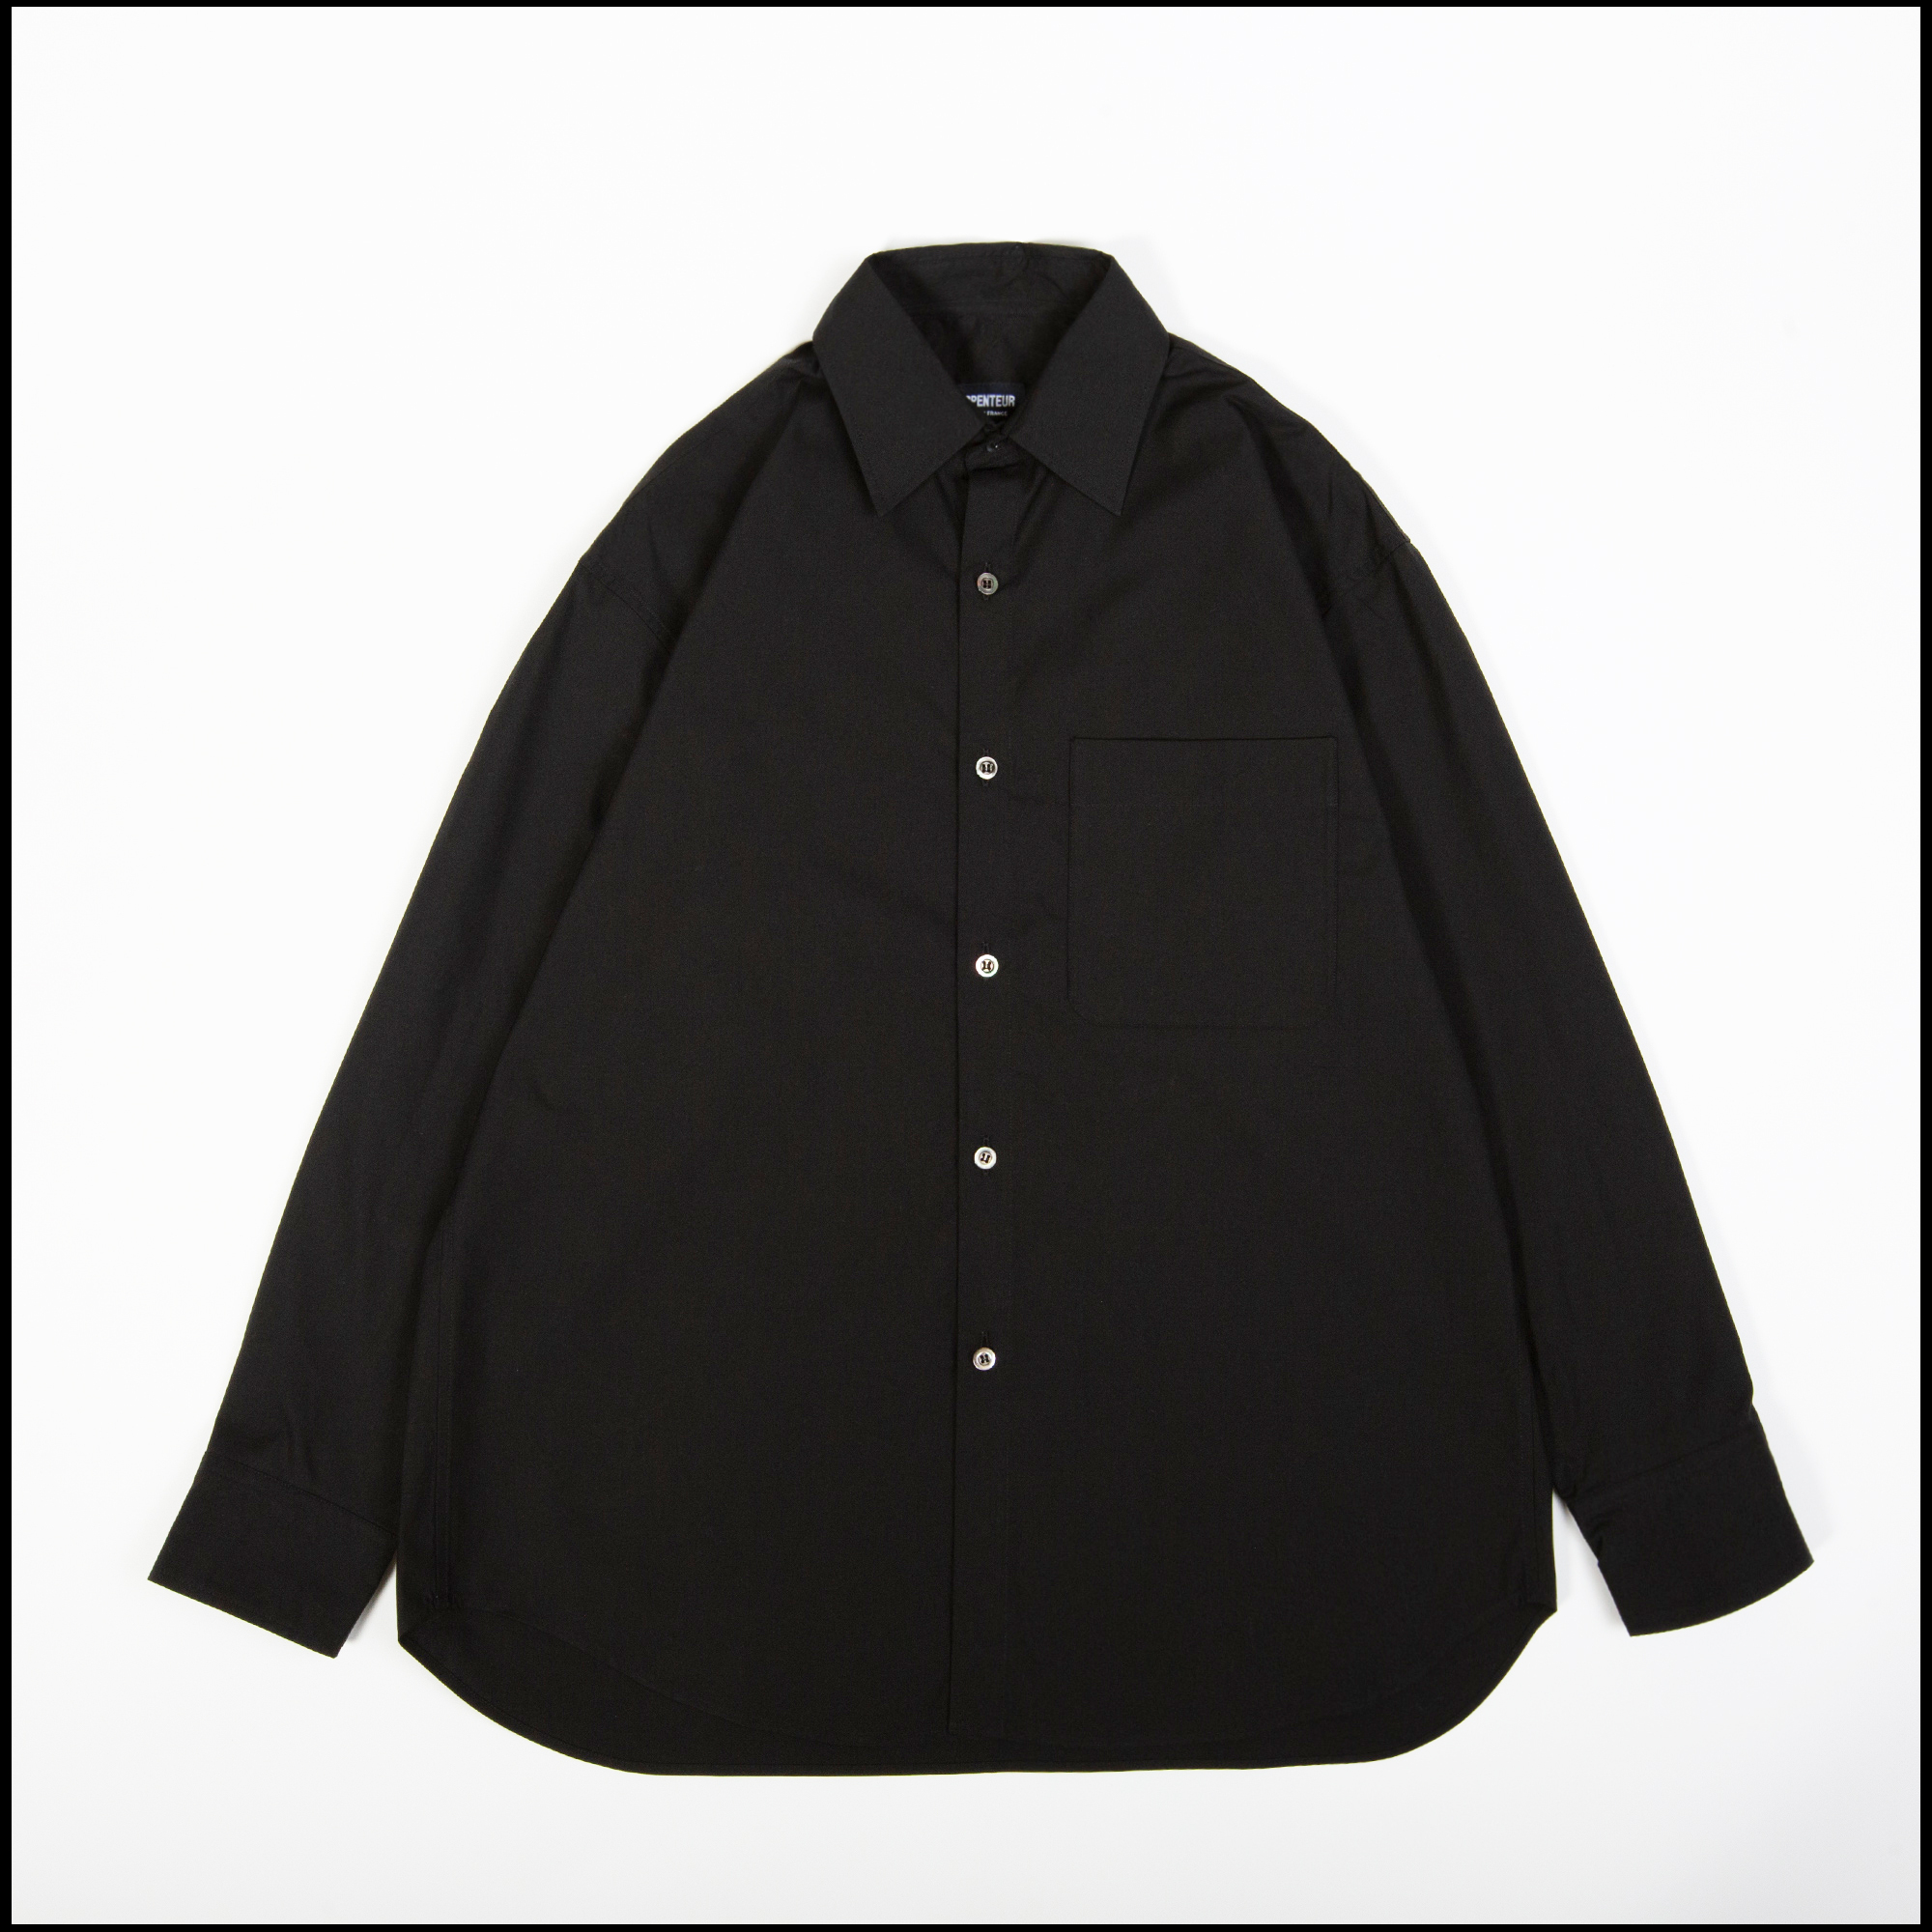 DORIS shirt in Black color by Arpenteur